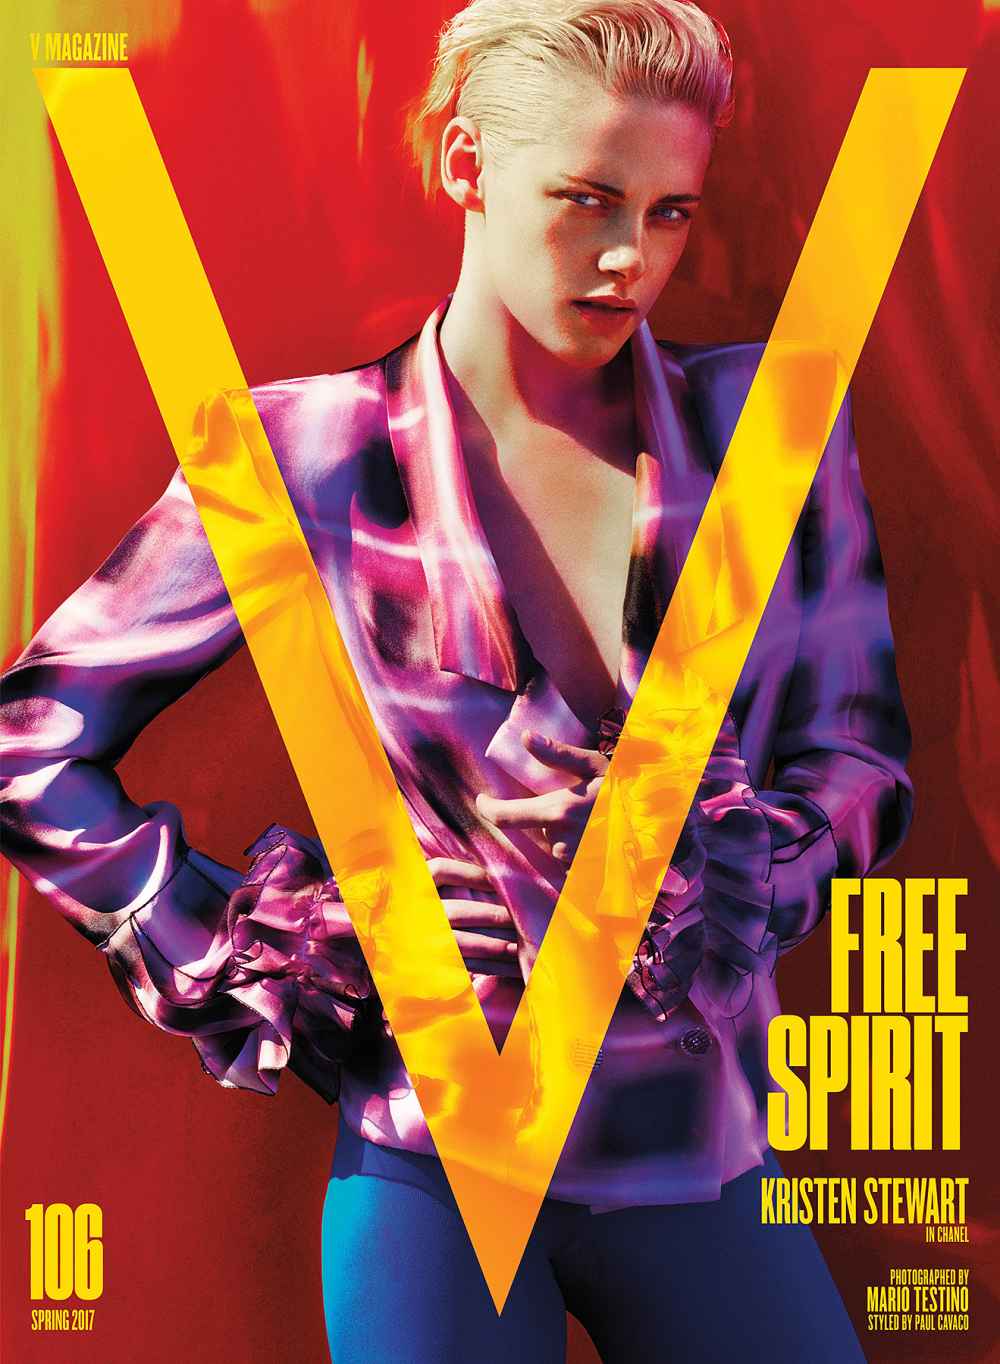 Kristen Stewart on the cover of V Magazine